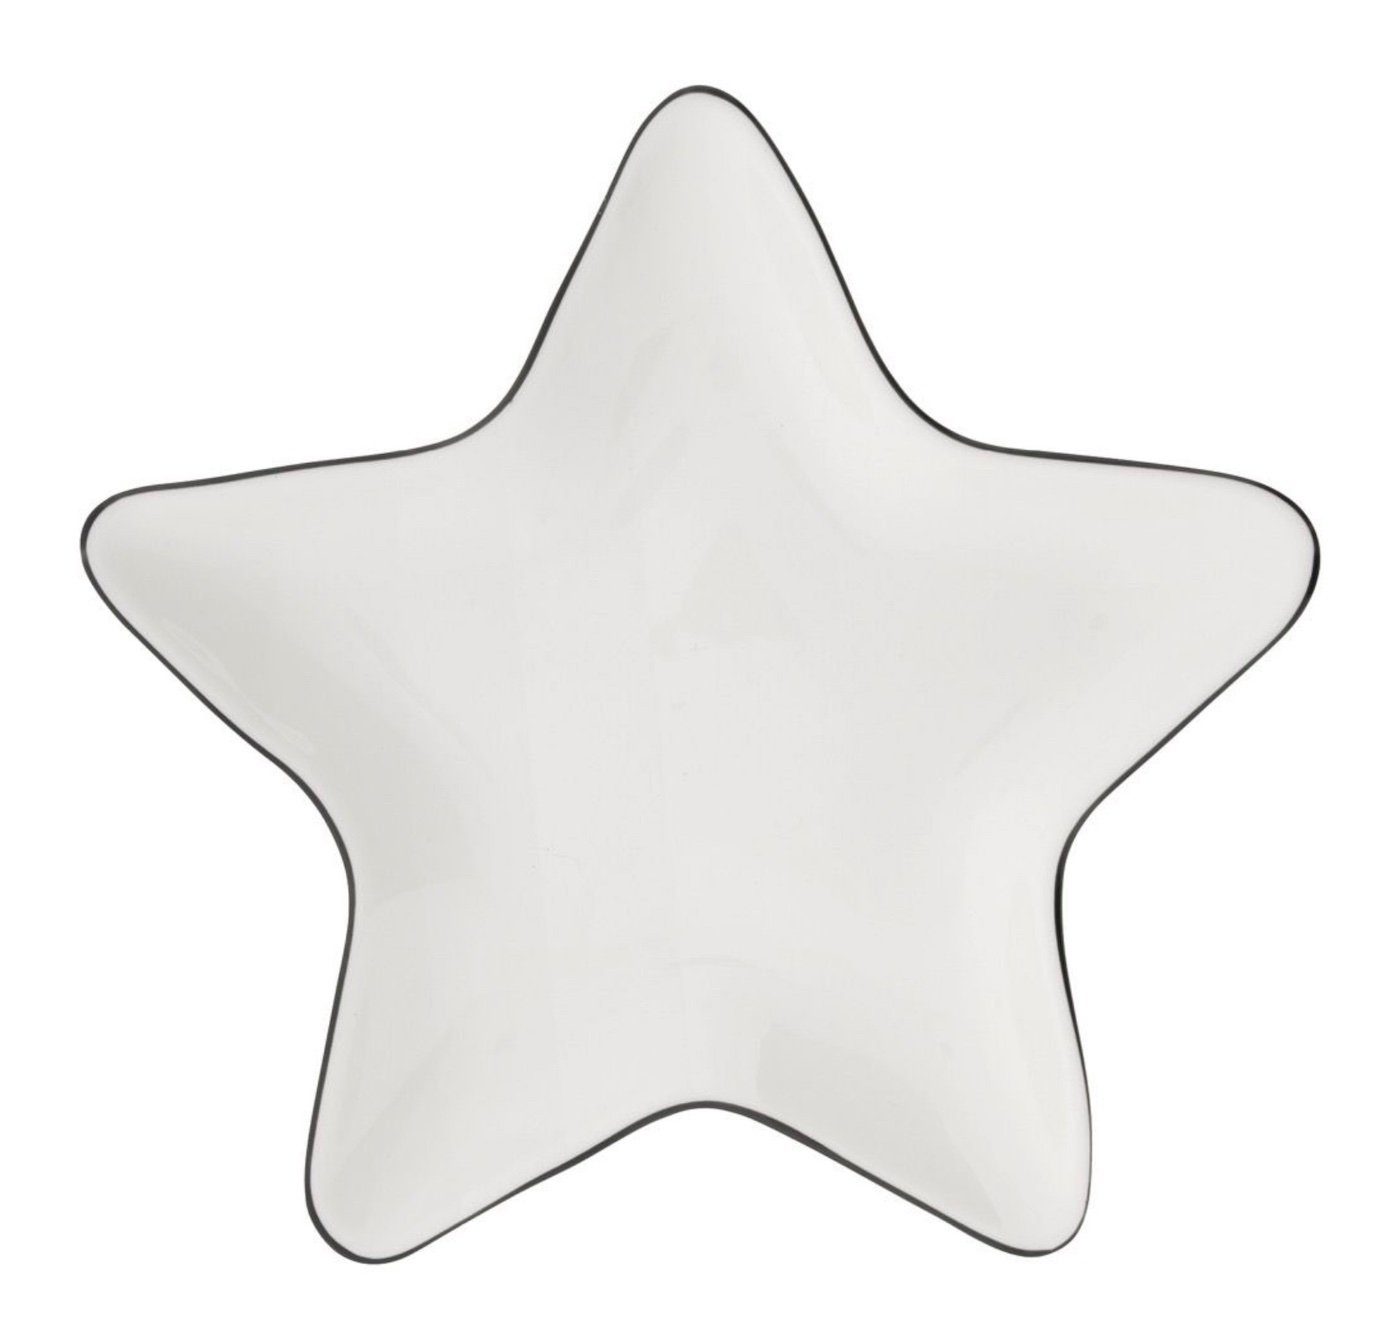 schwarz Keramik 18x18cm, weiß Bastion handbemalt Teller Collections Star Dekoteller